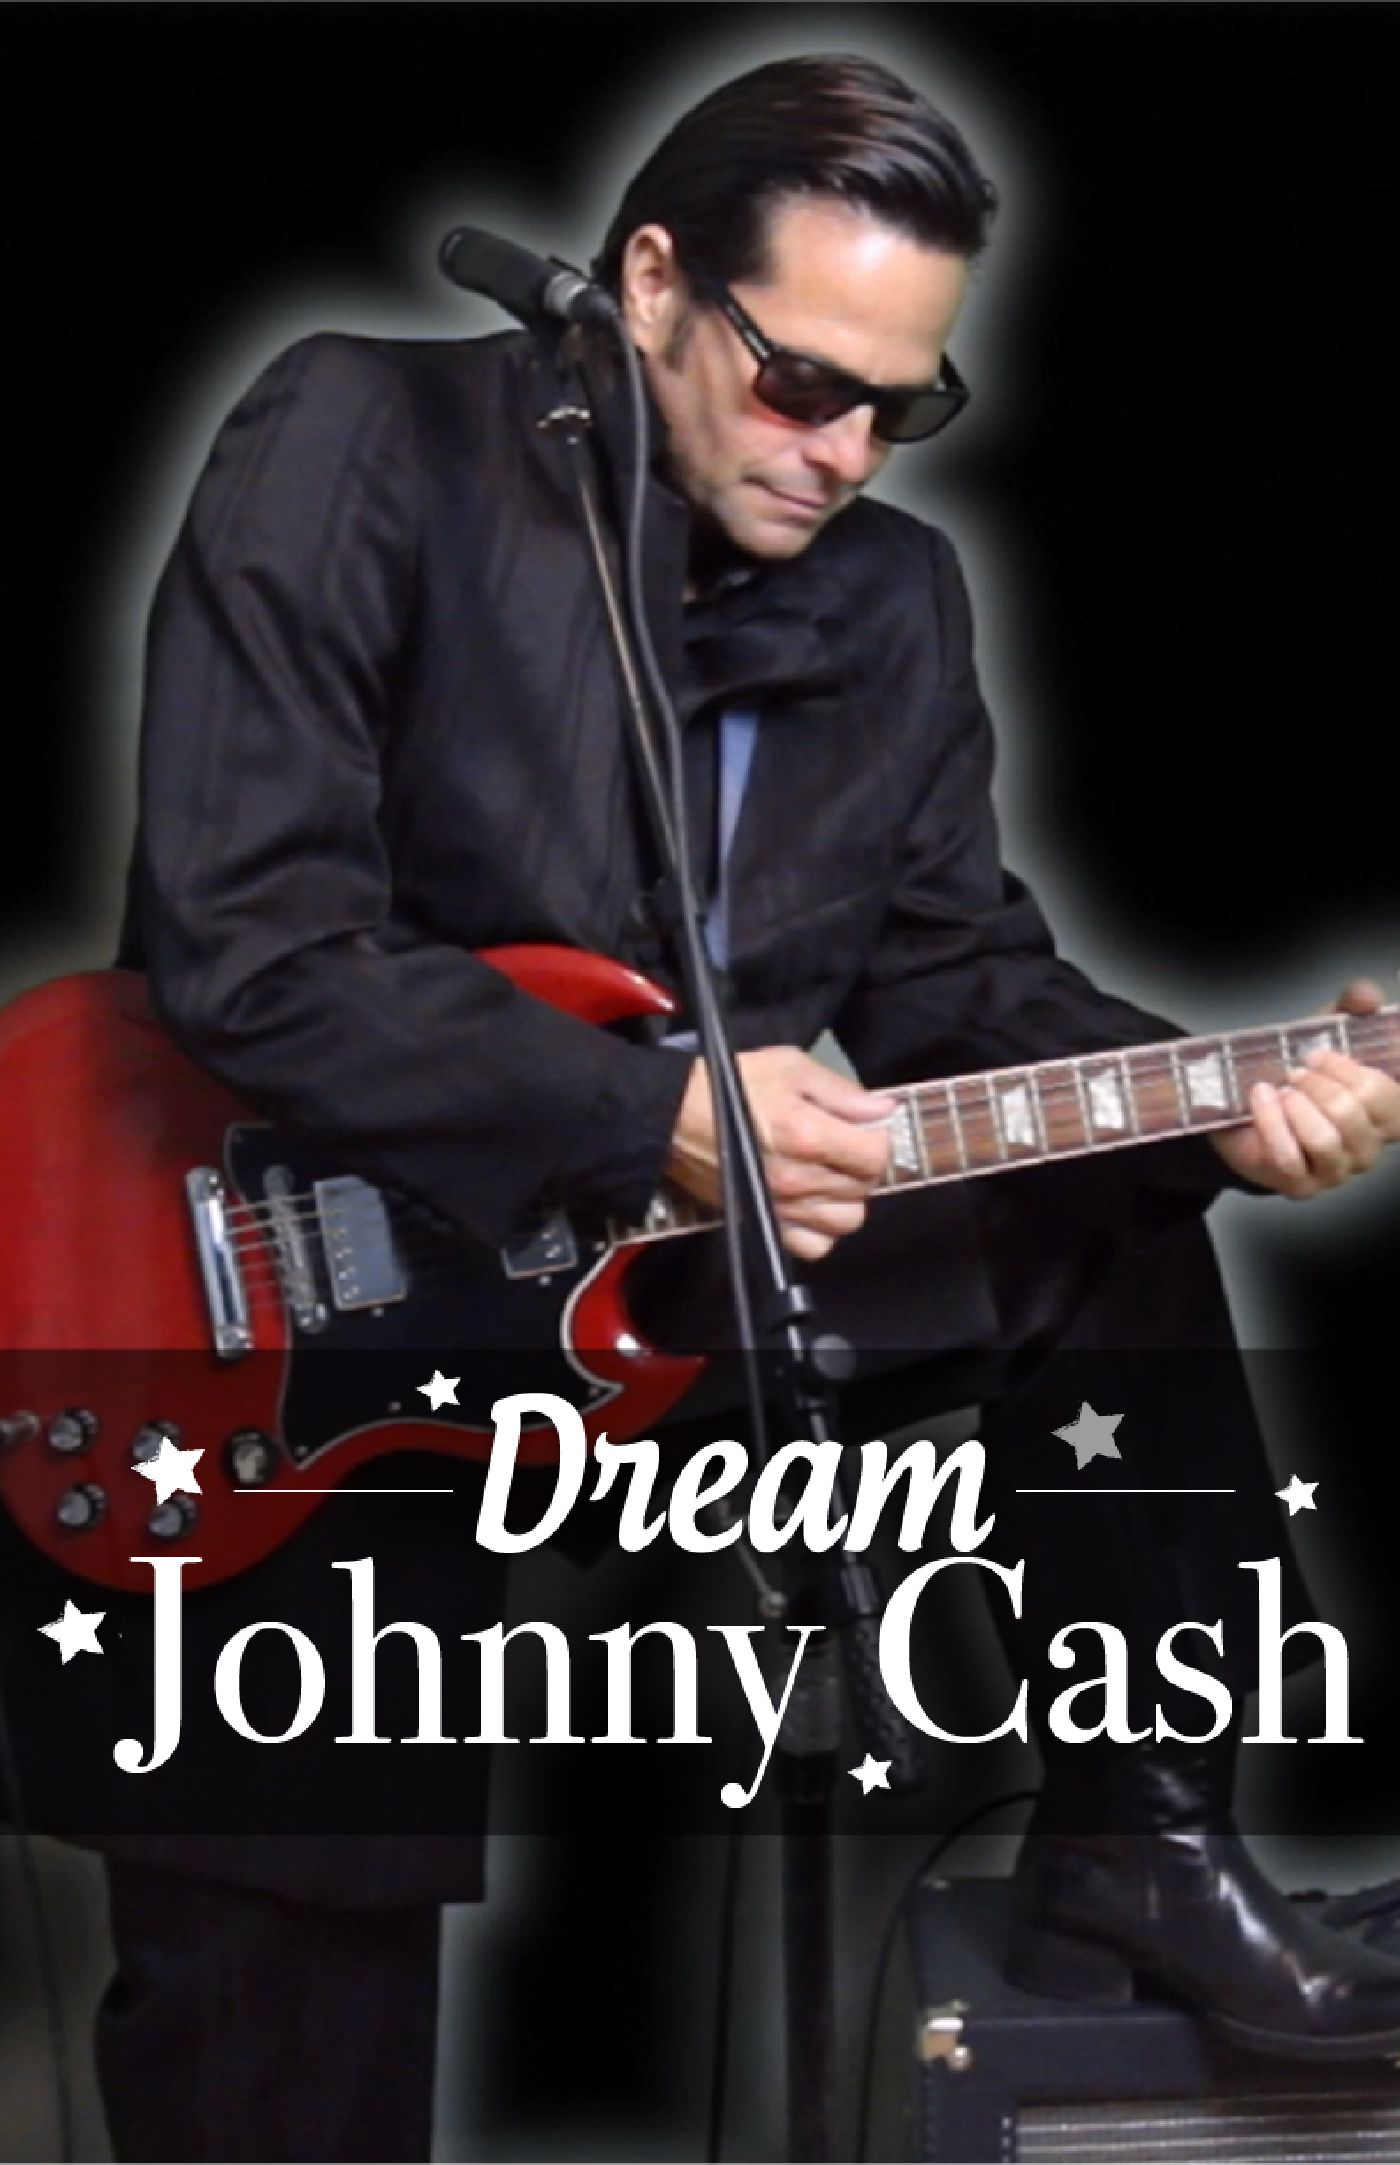 Dream johnny Cash